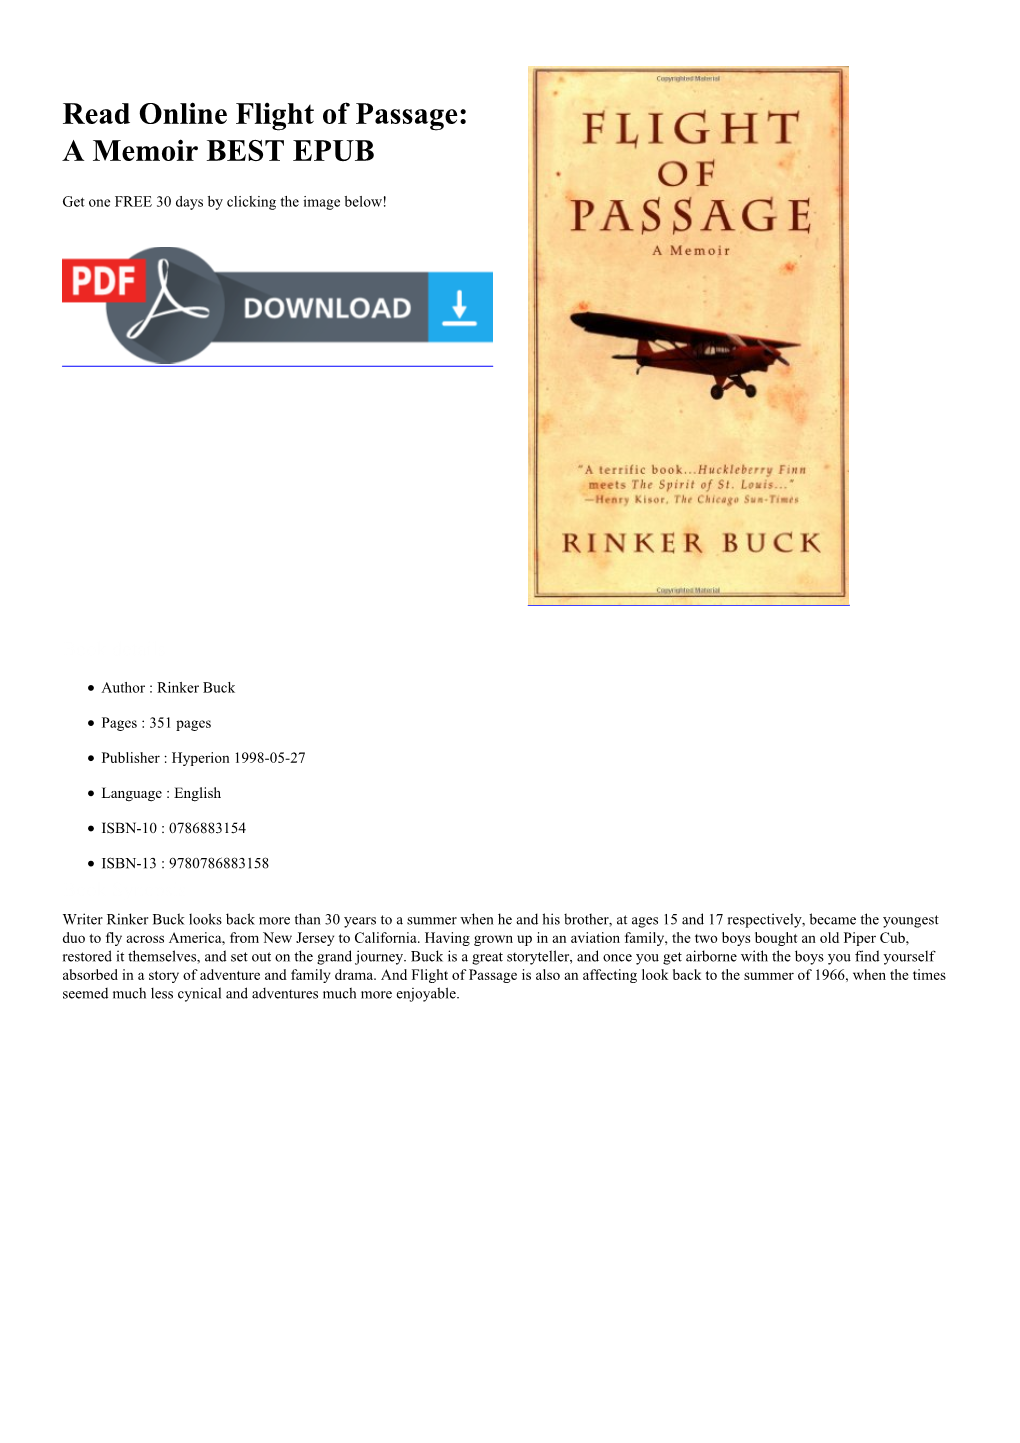 Read Online Flight of Passage: a Memoir BEST EPUB